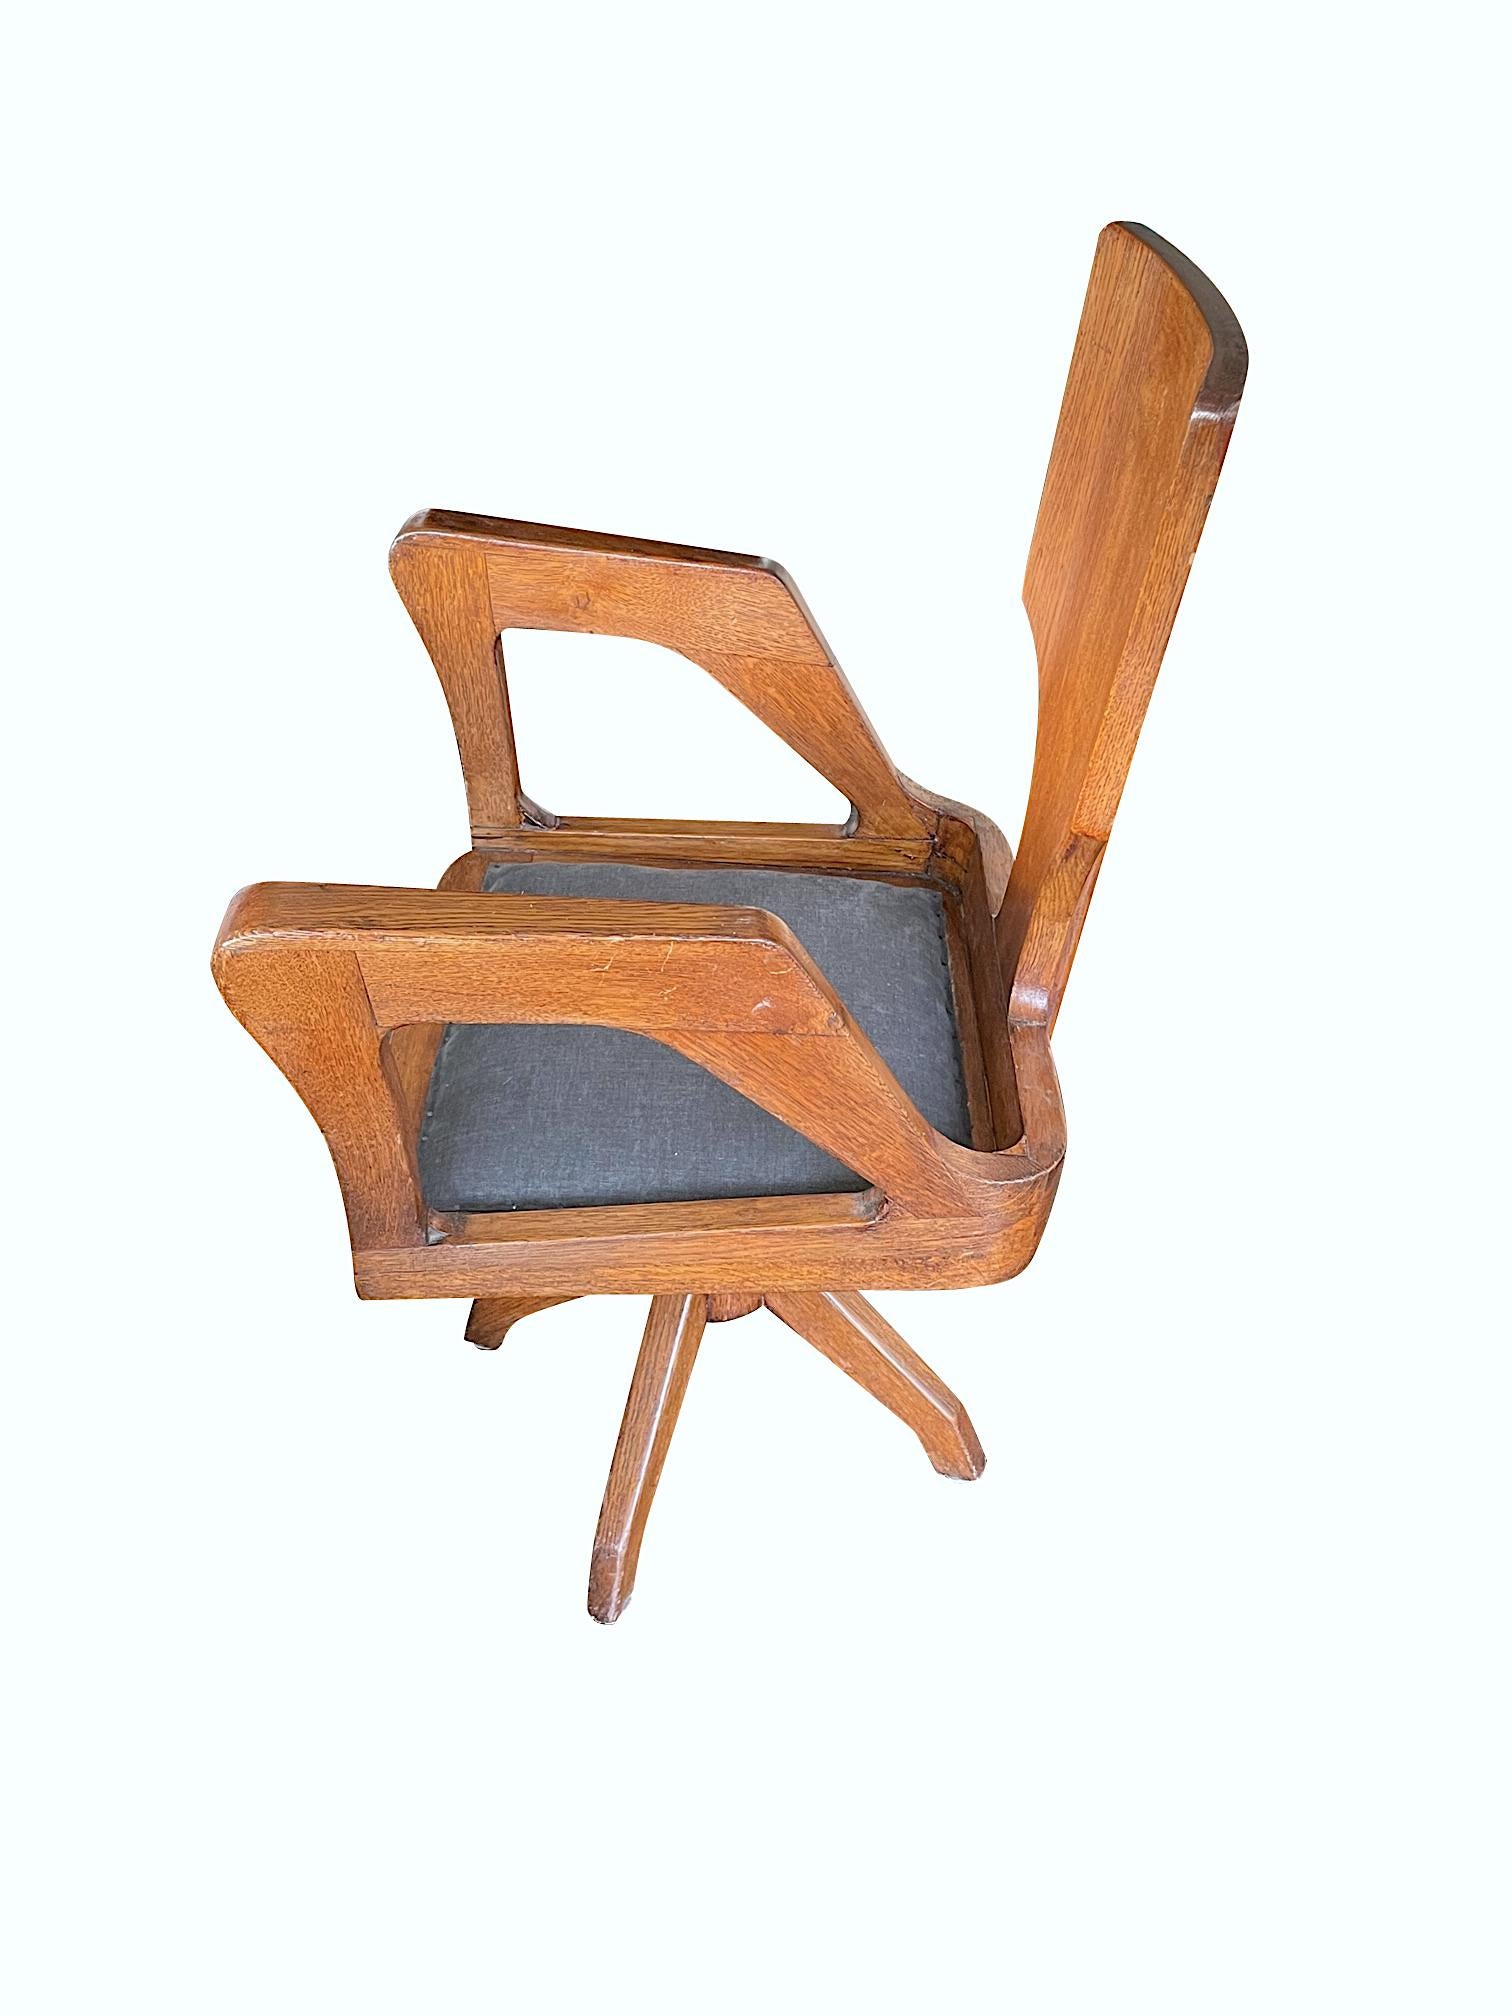 Italienischer Drehstuhl aus den 1930er Jahren mit Holzrahmen und skulpturalem Design.
Dreibeinige Beine.
Sieht aus allen Blickwinkeln großartig aus.
Neu bezogener grauer Sitz aus gebürstetem Twill. 